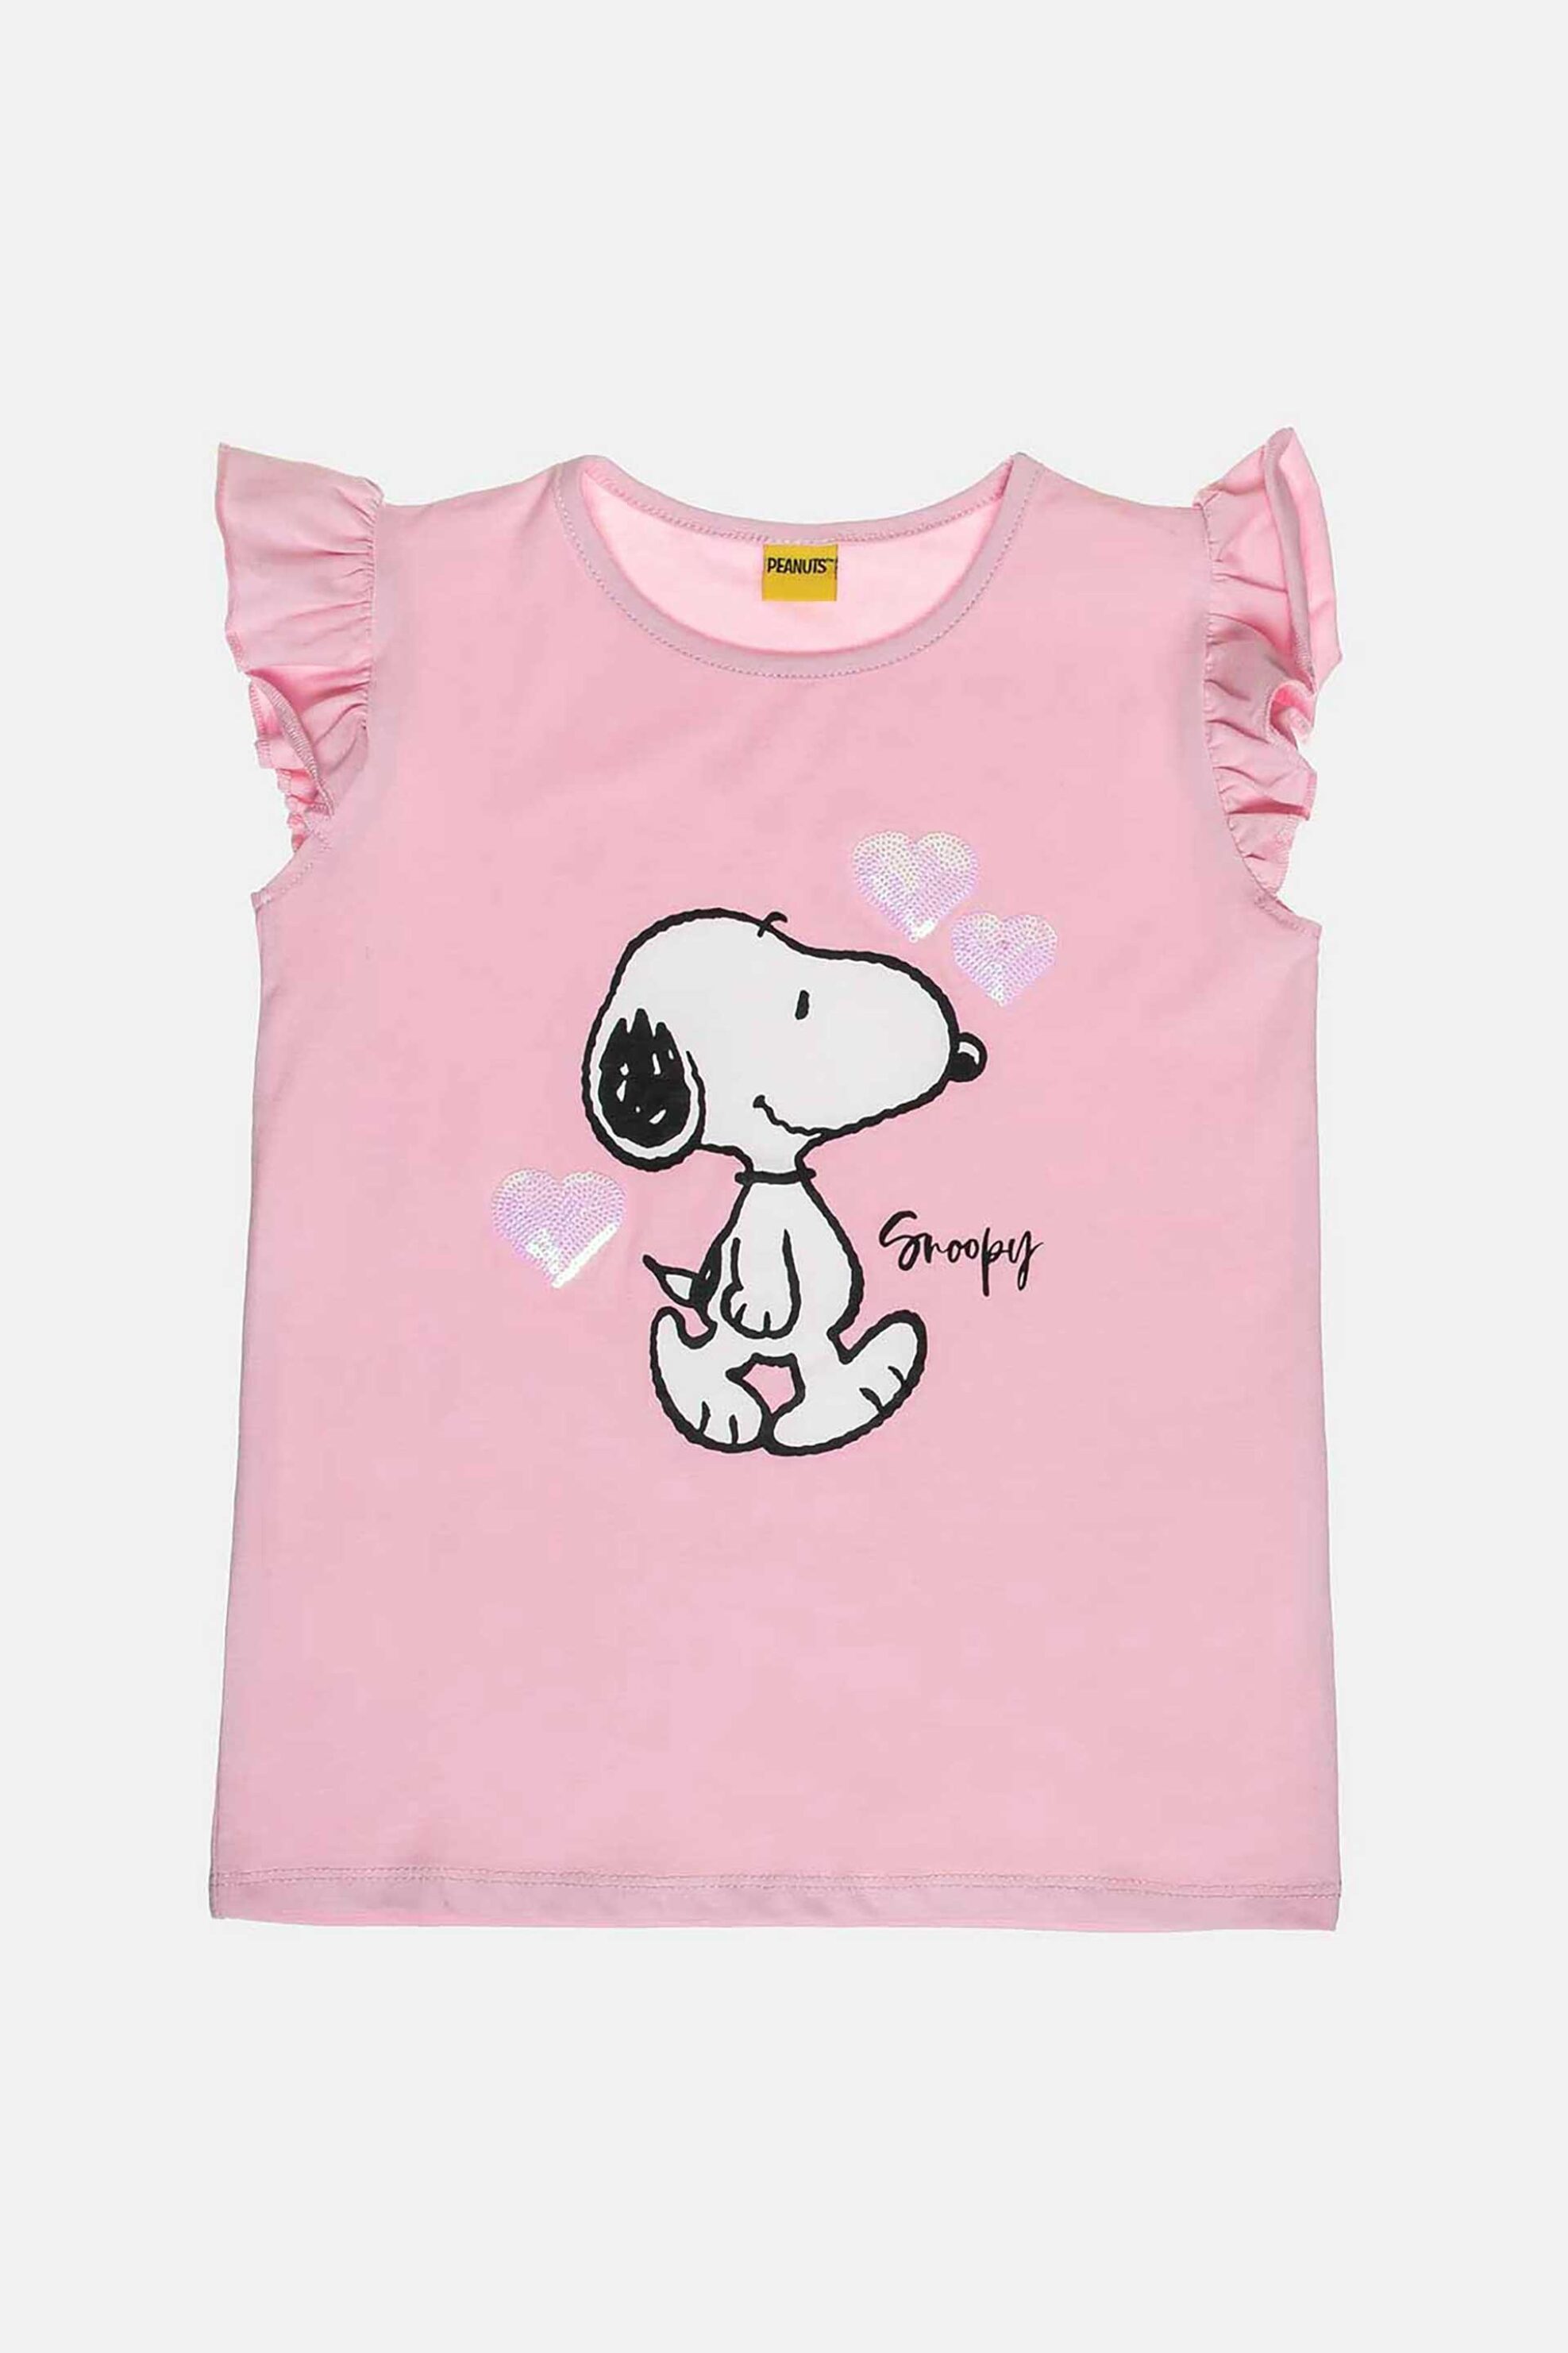 Παιδικά Ρούχα, Παπούτσια & Παιχνίδια > Παιδικά Ρούχα & Αξεσουάρ για Κορίτσια > Παιδικές Μπλούζες για Κορίτσια > Παιδικά T-Shirts για Κορίτσια Alouette παιδική αμάνικη μπλούζα με βολάν και τύπωμα με παγιέτες "Snoopy" - 00151913 Ροζ